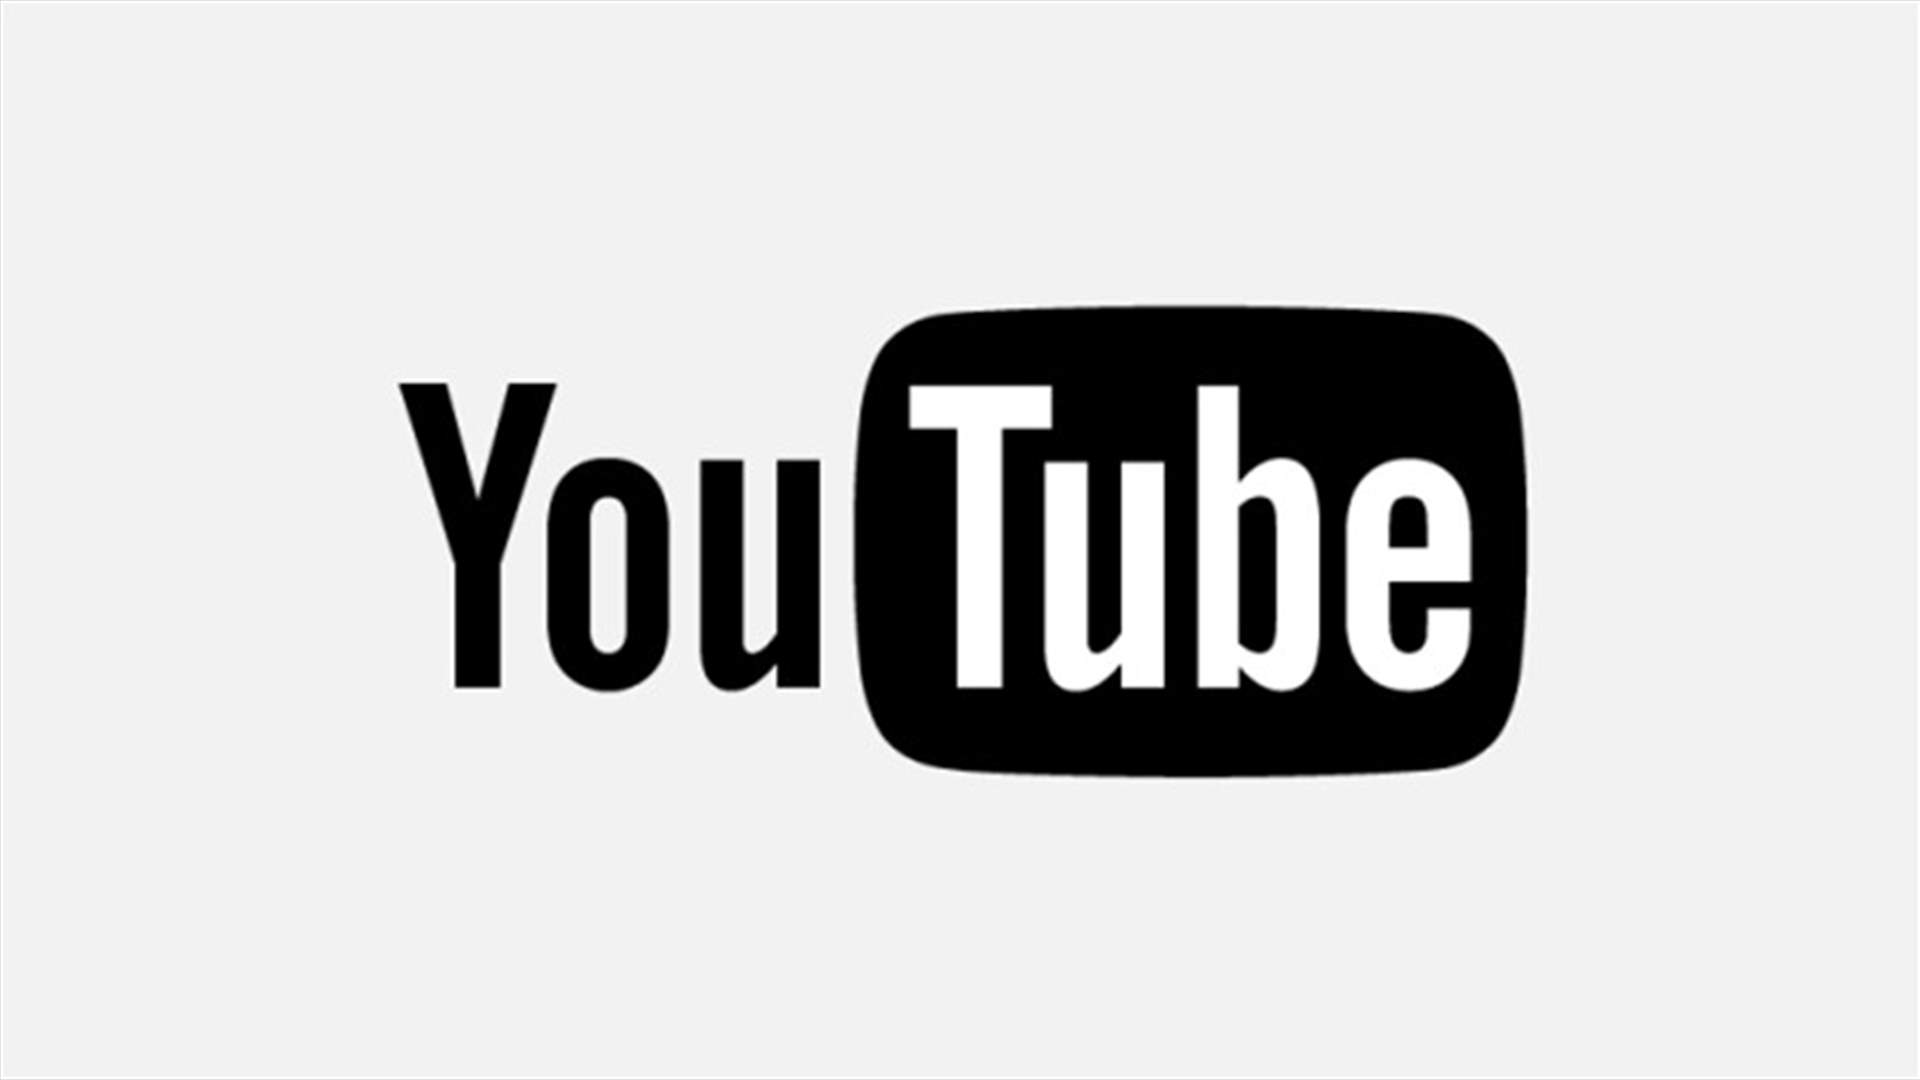 خدمة جديدة من يوتيوب لمكافحة المحتوى المتطرف والإرهاب